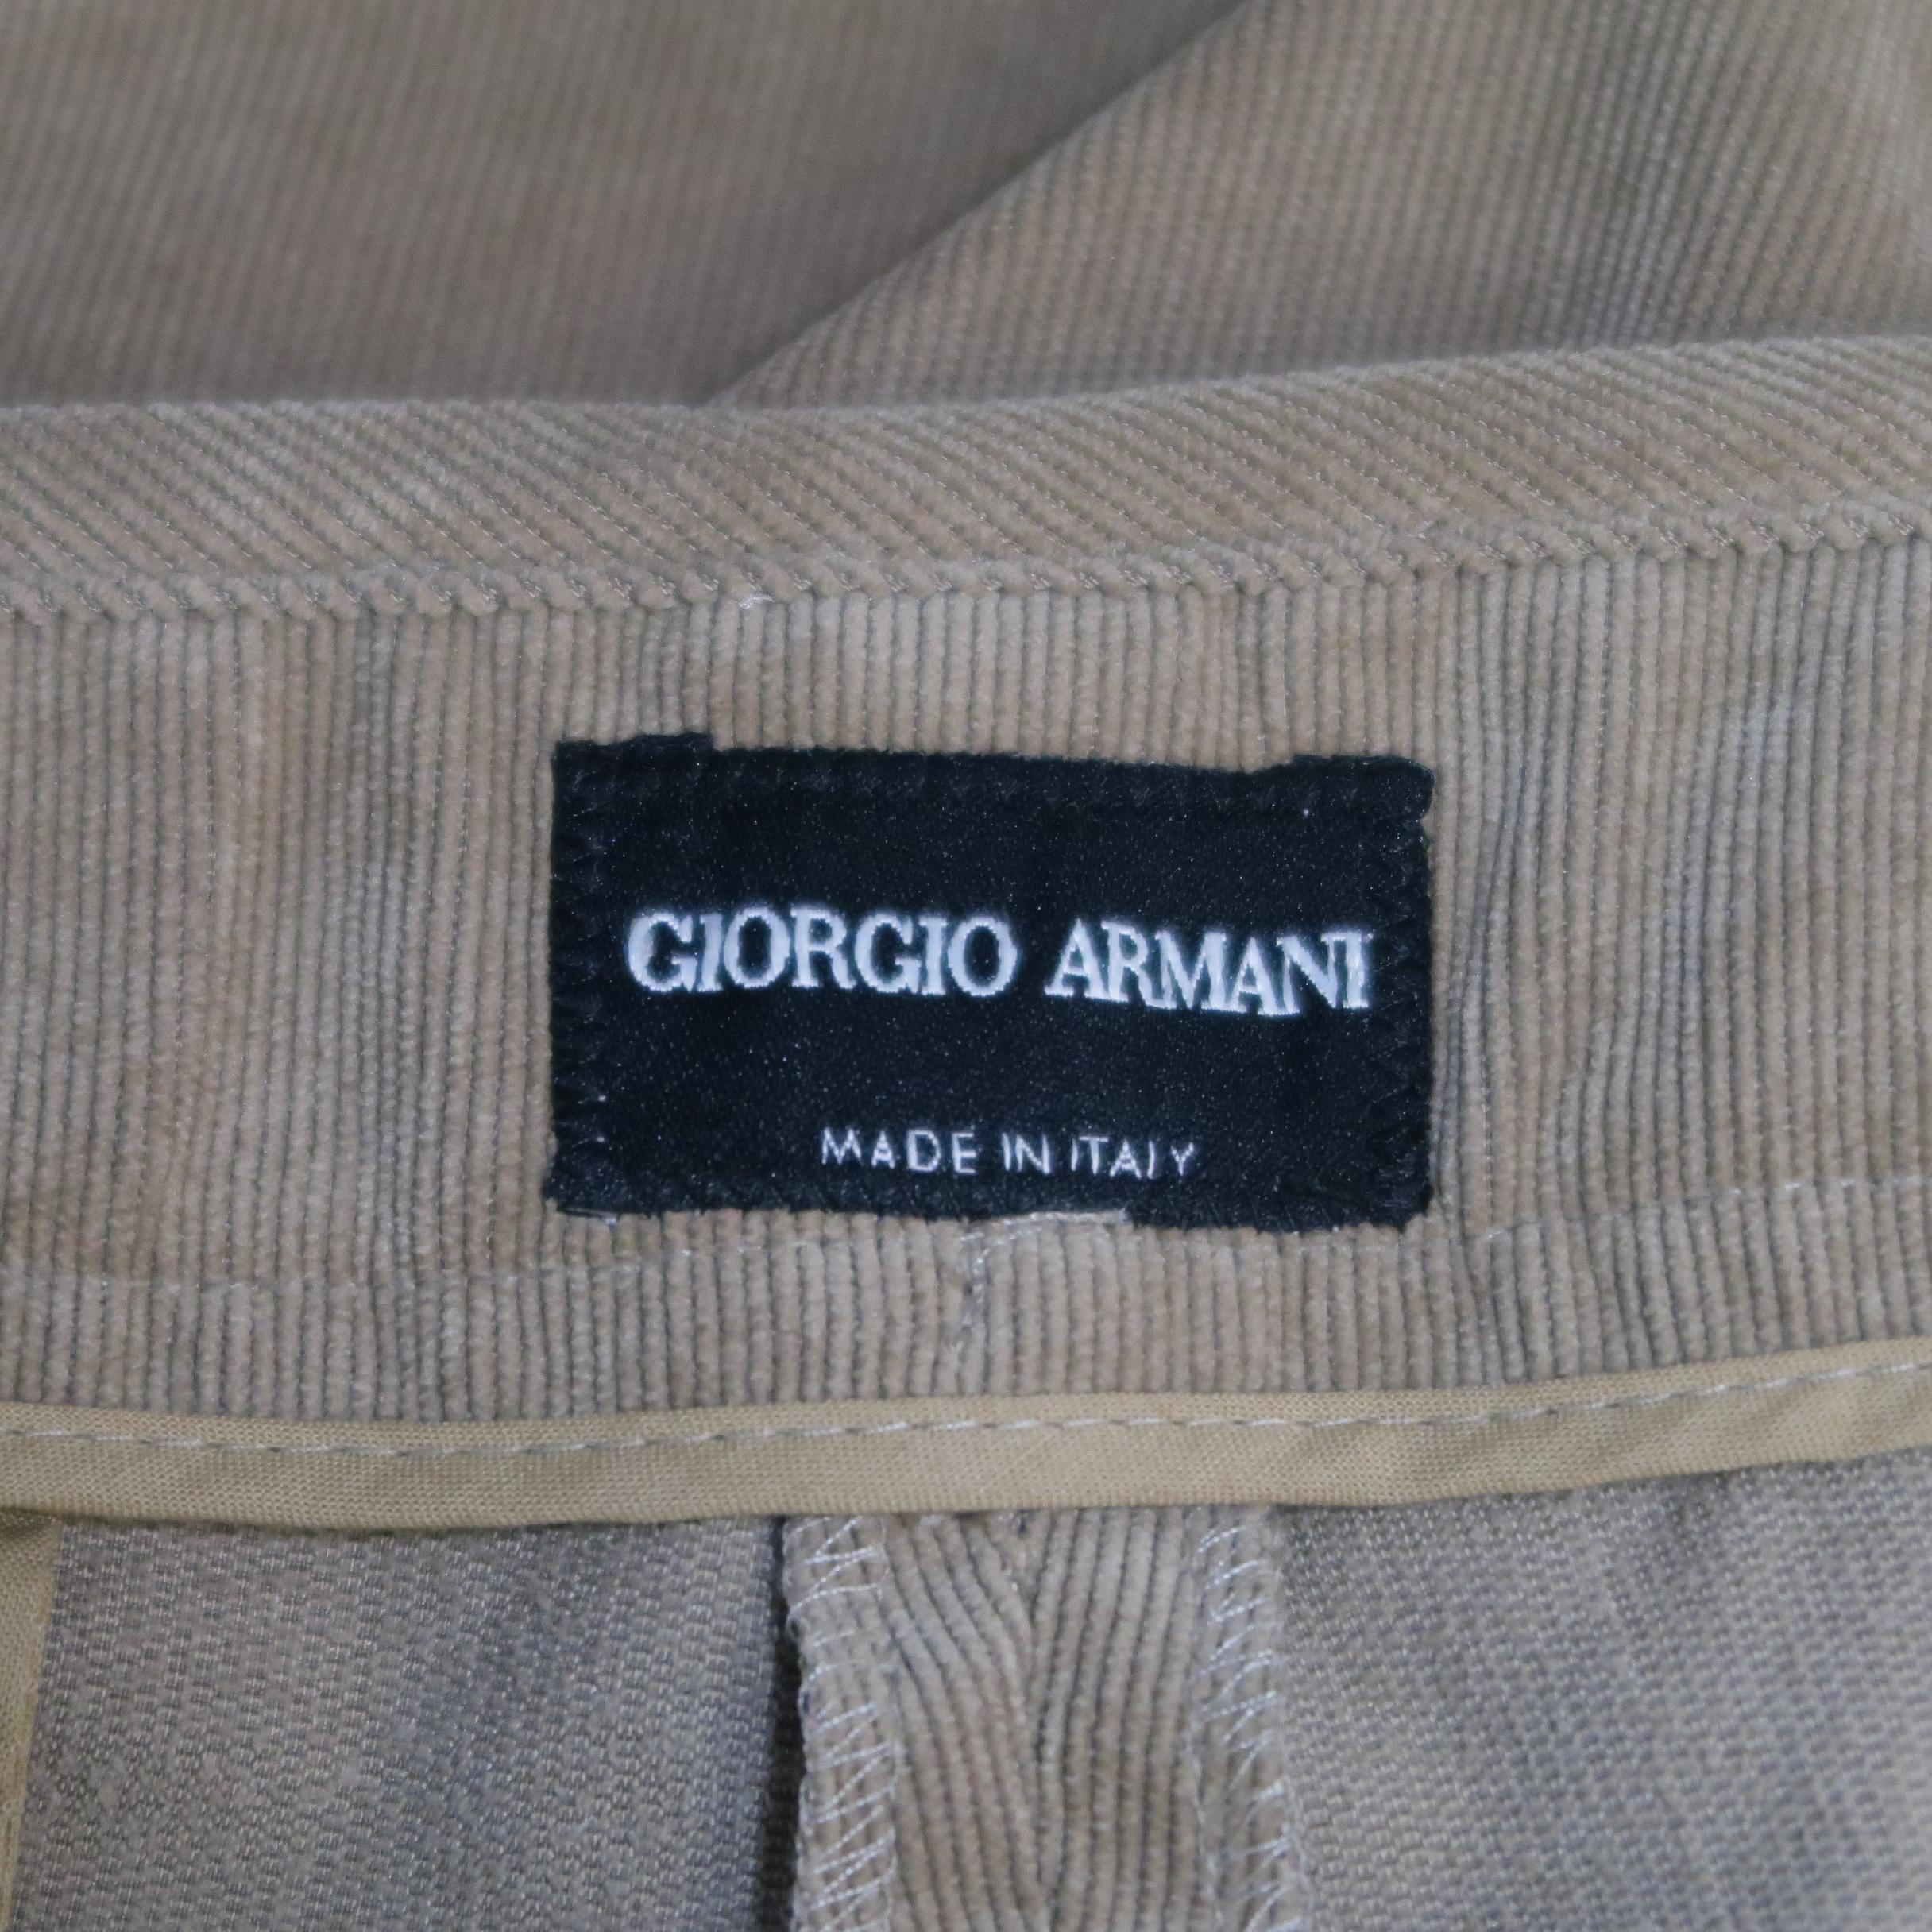 Giorgio Armani Tan Corduroy Dress Pants 5